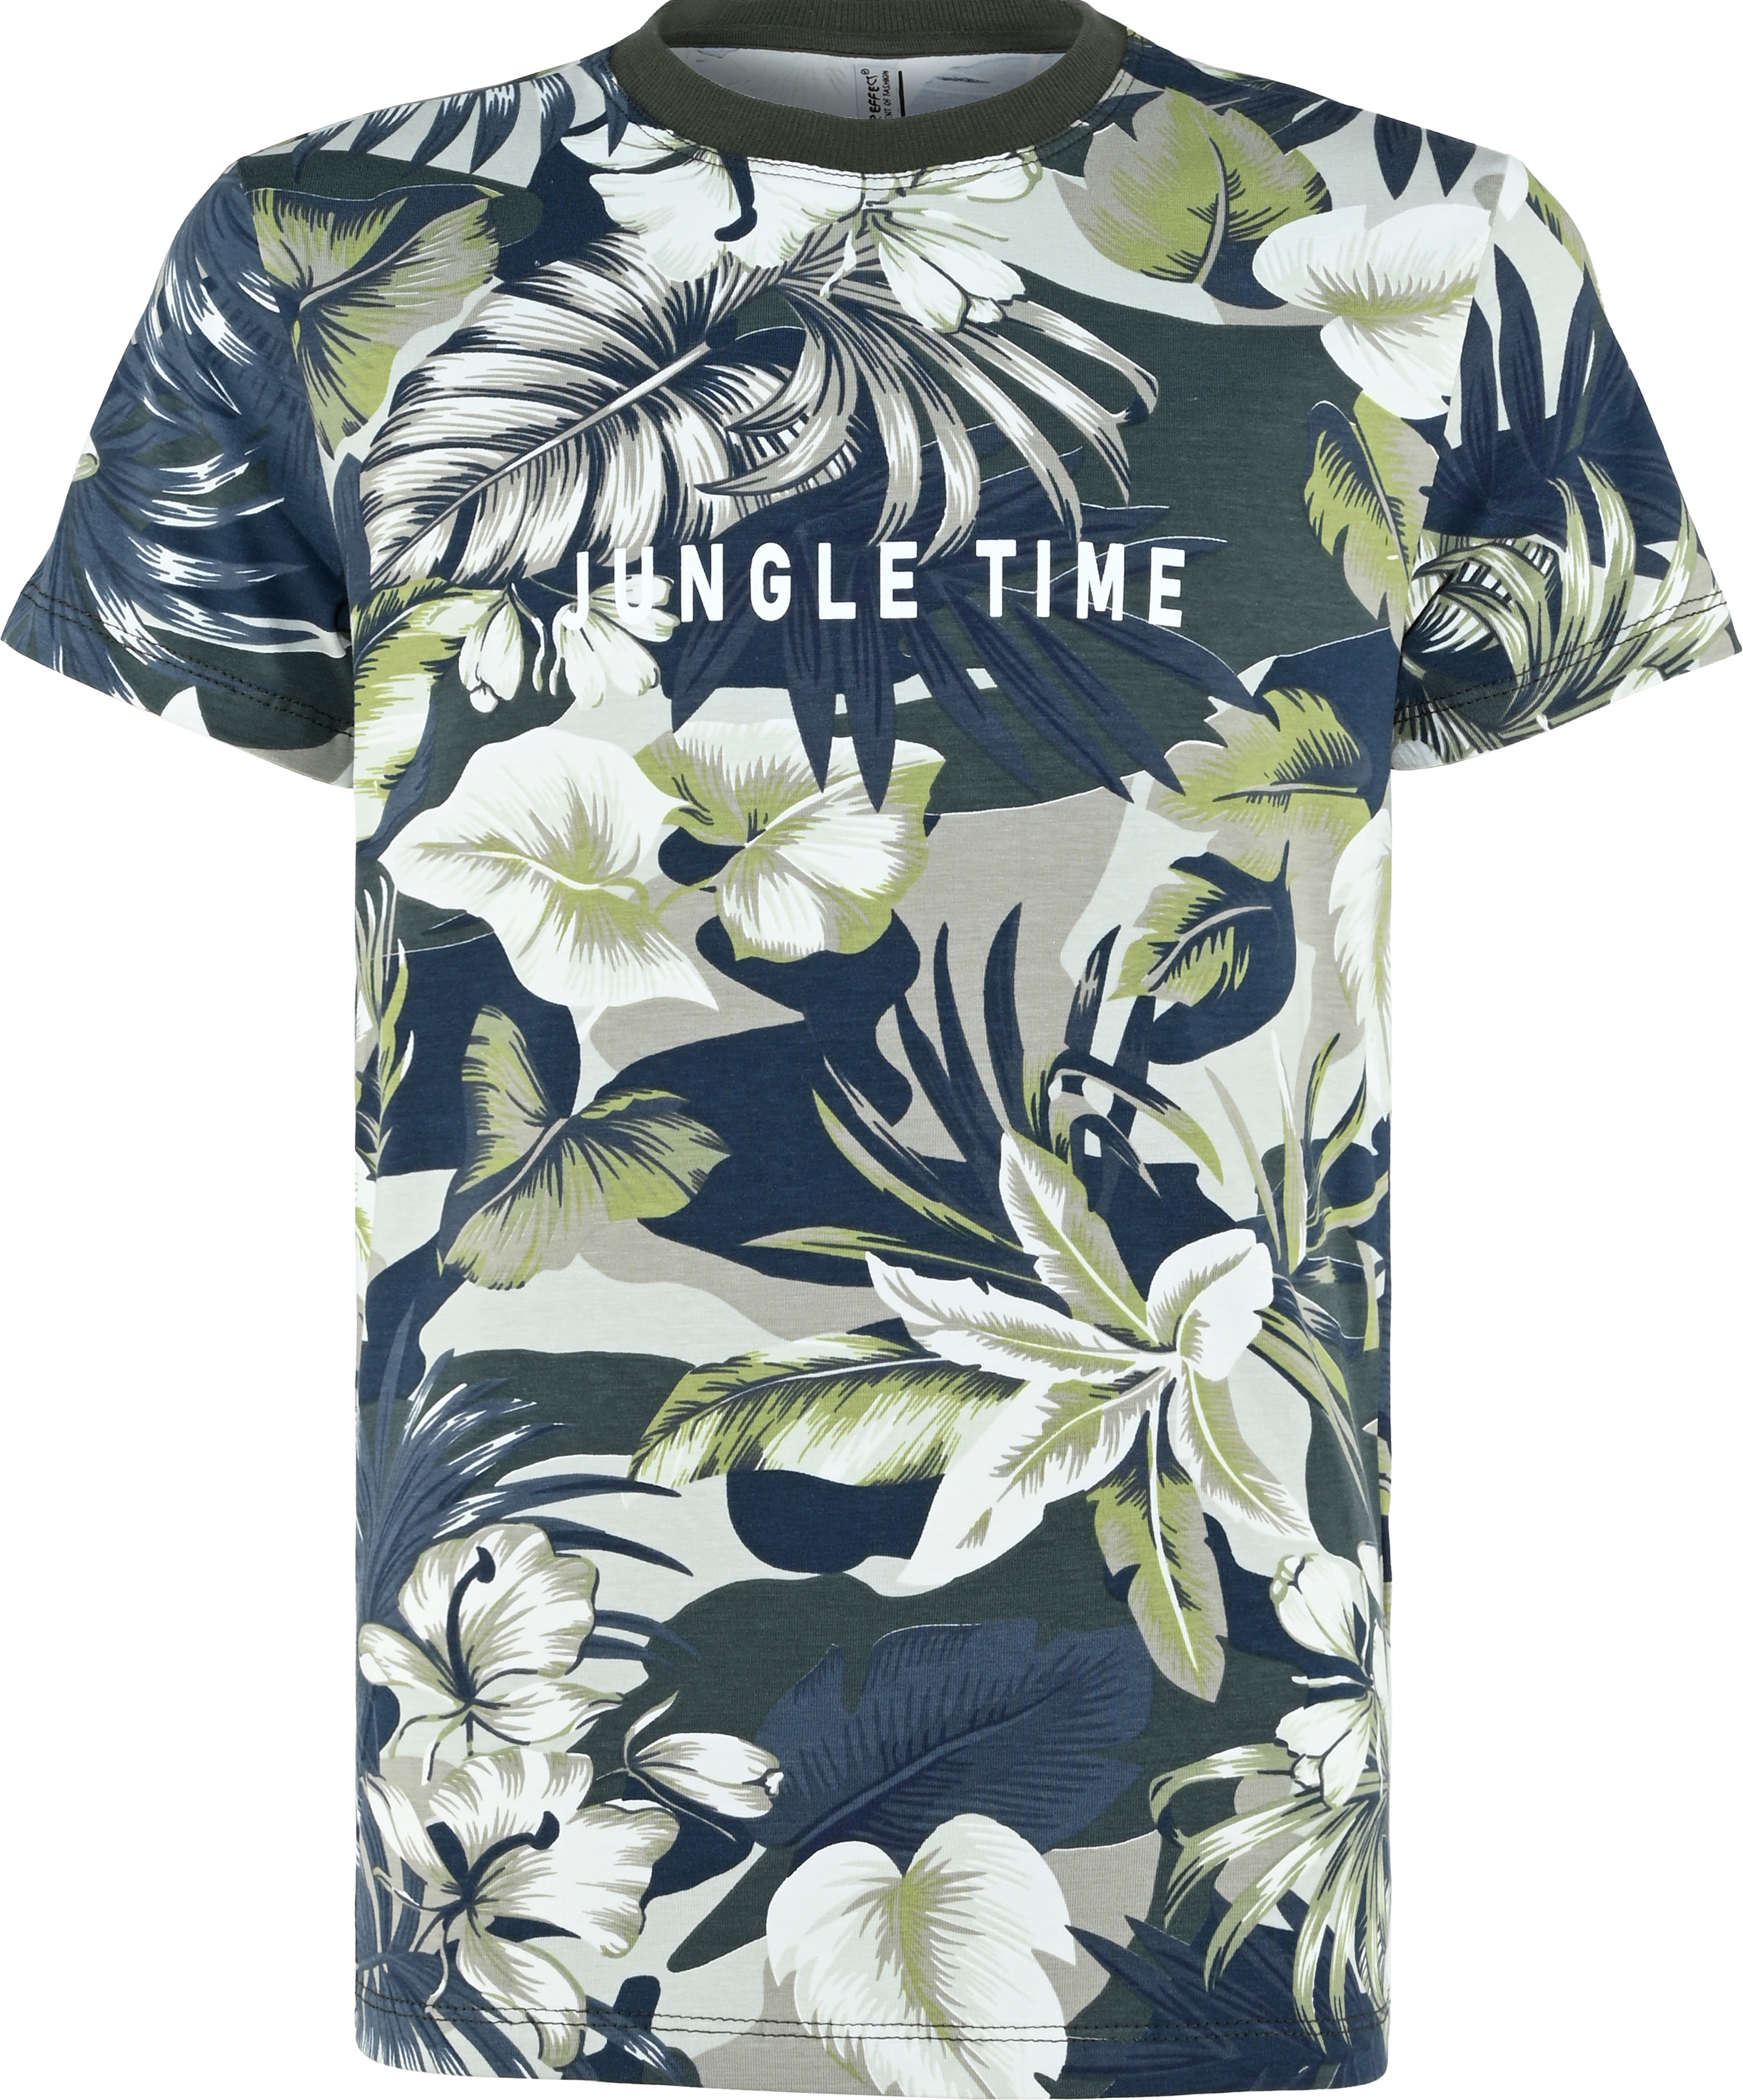 6201-Boys T-Shirt -Jungle Time